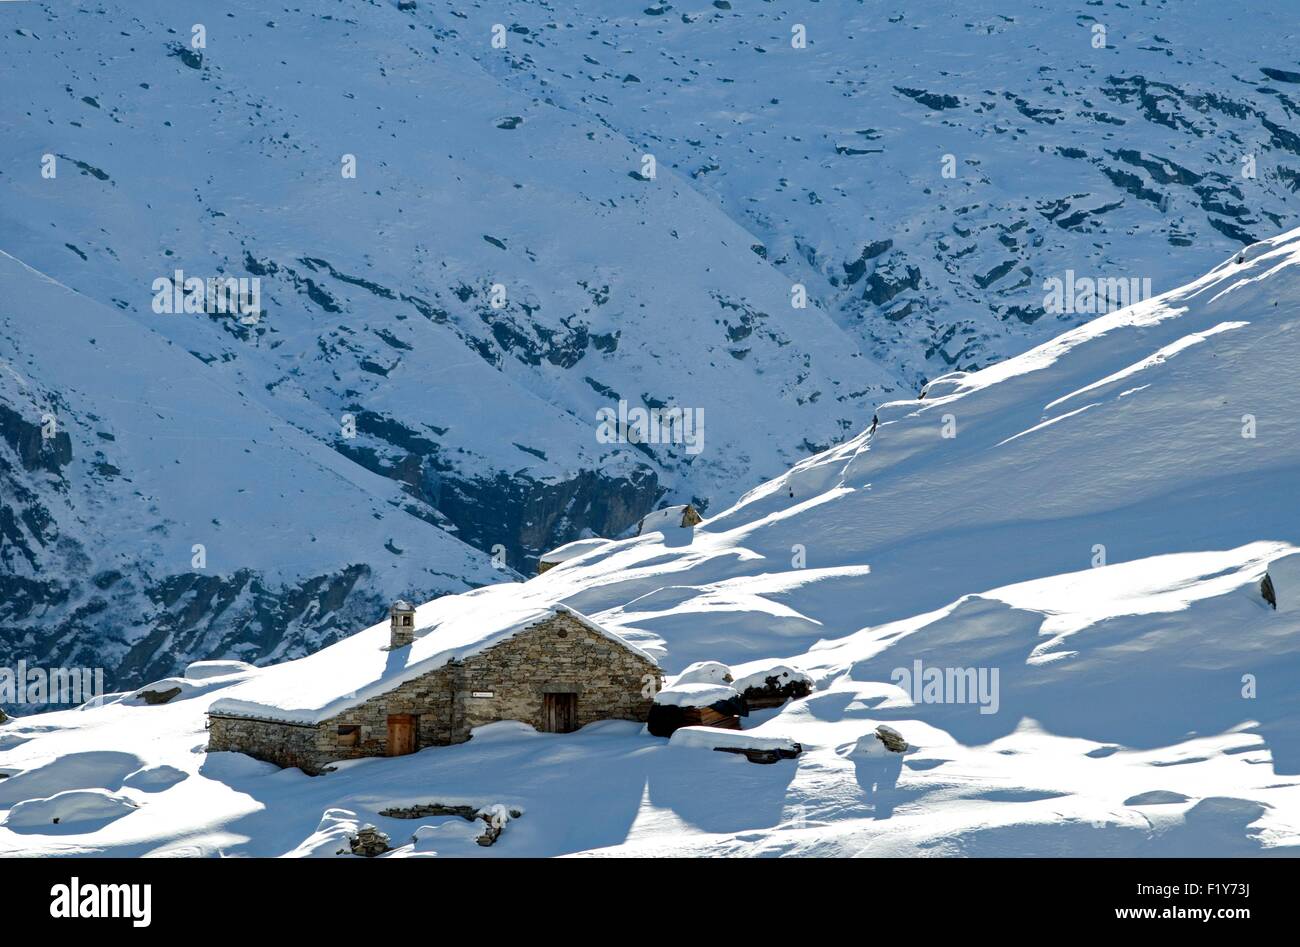 Italy, the Alps, Gran Paradiso National Park, chalet Stock Photo